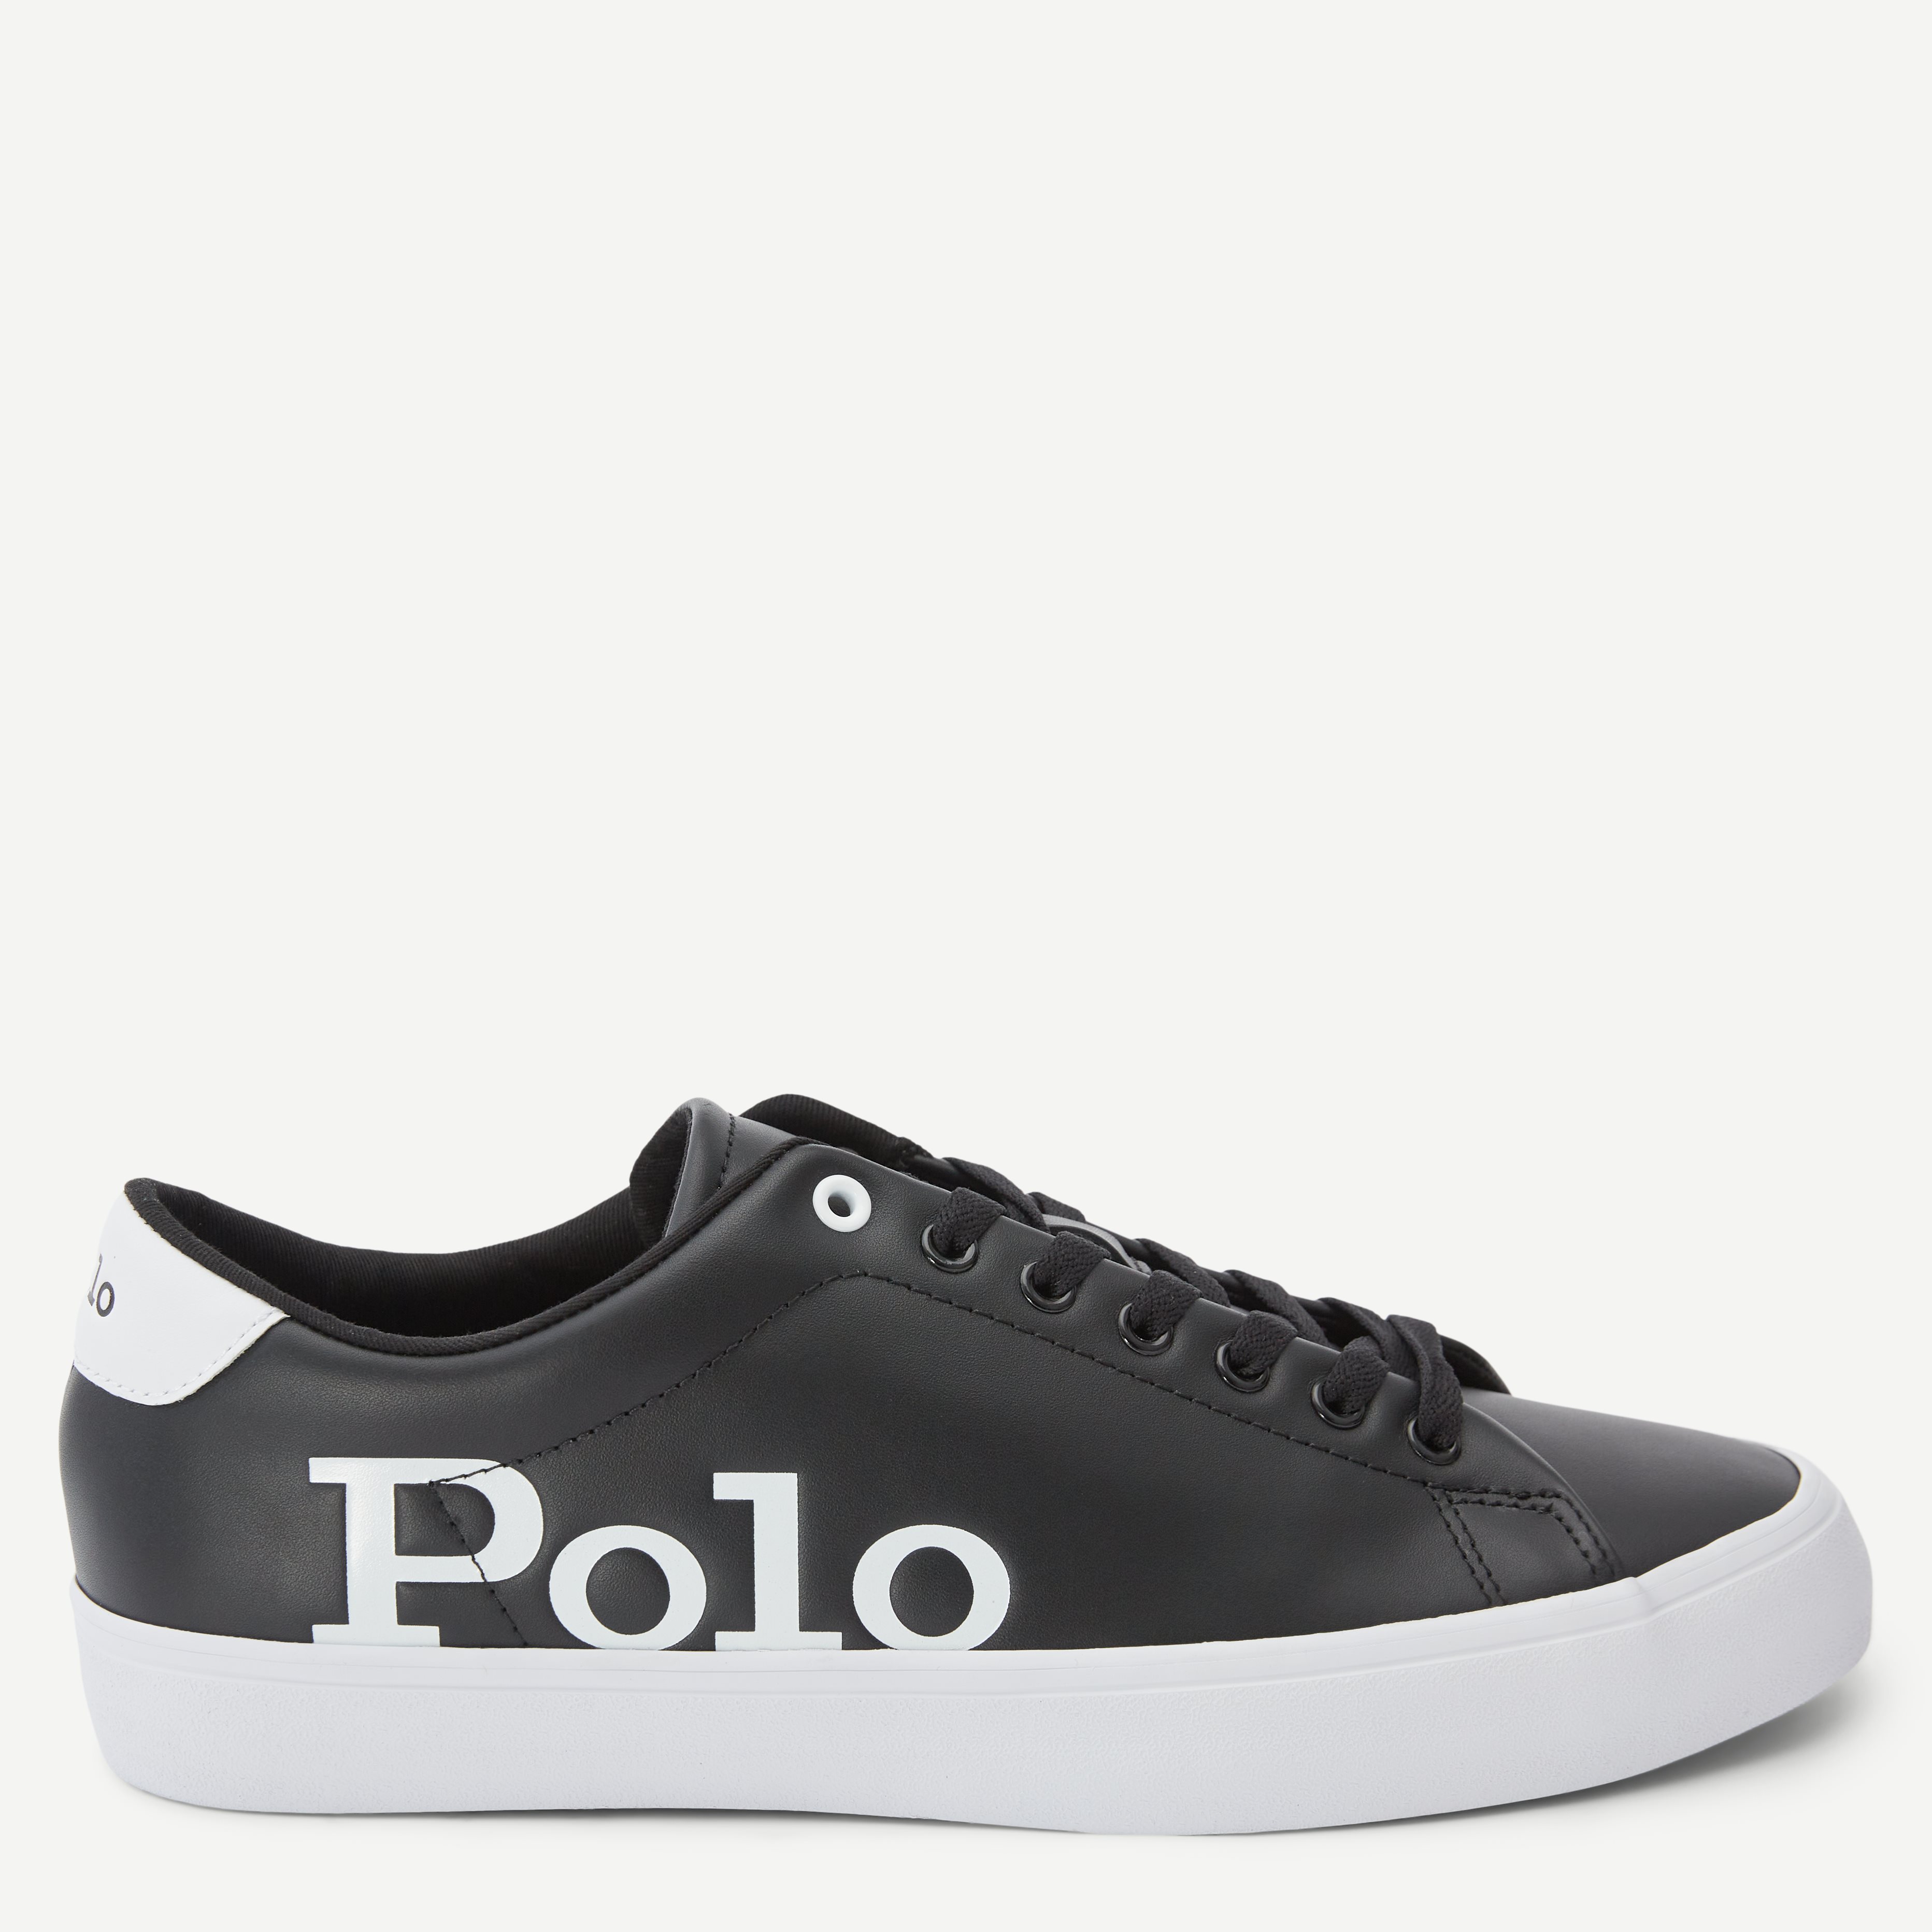 Polo Ralph Lauren Shoes 816862547 Black